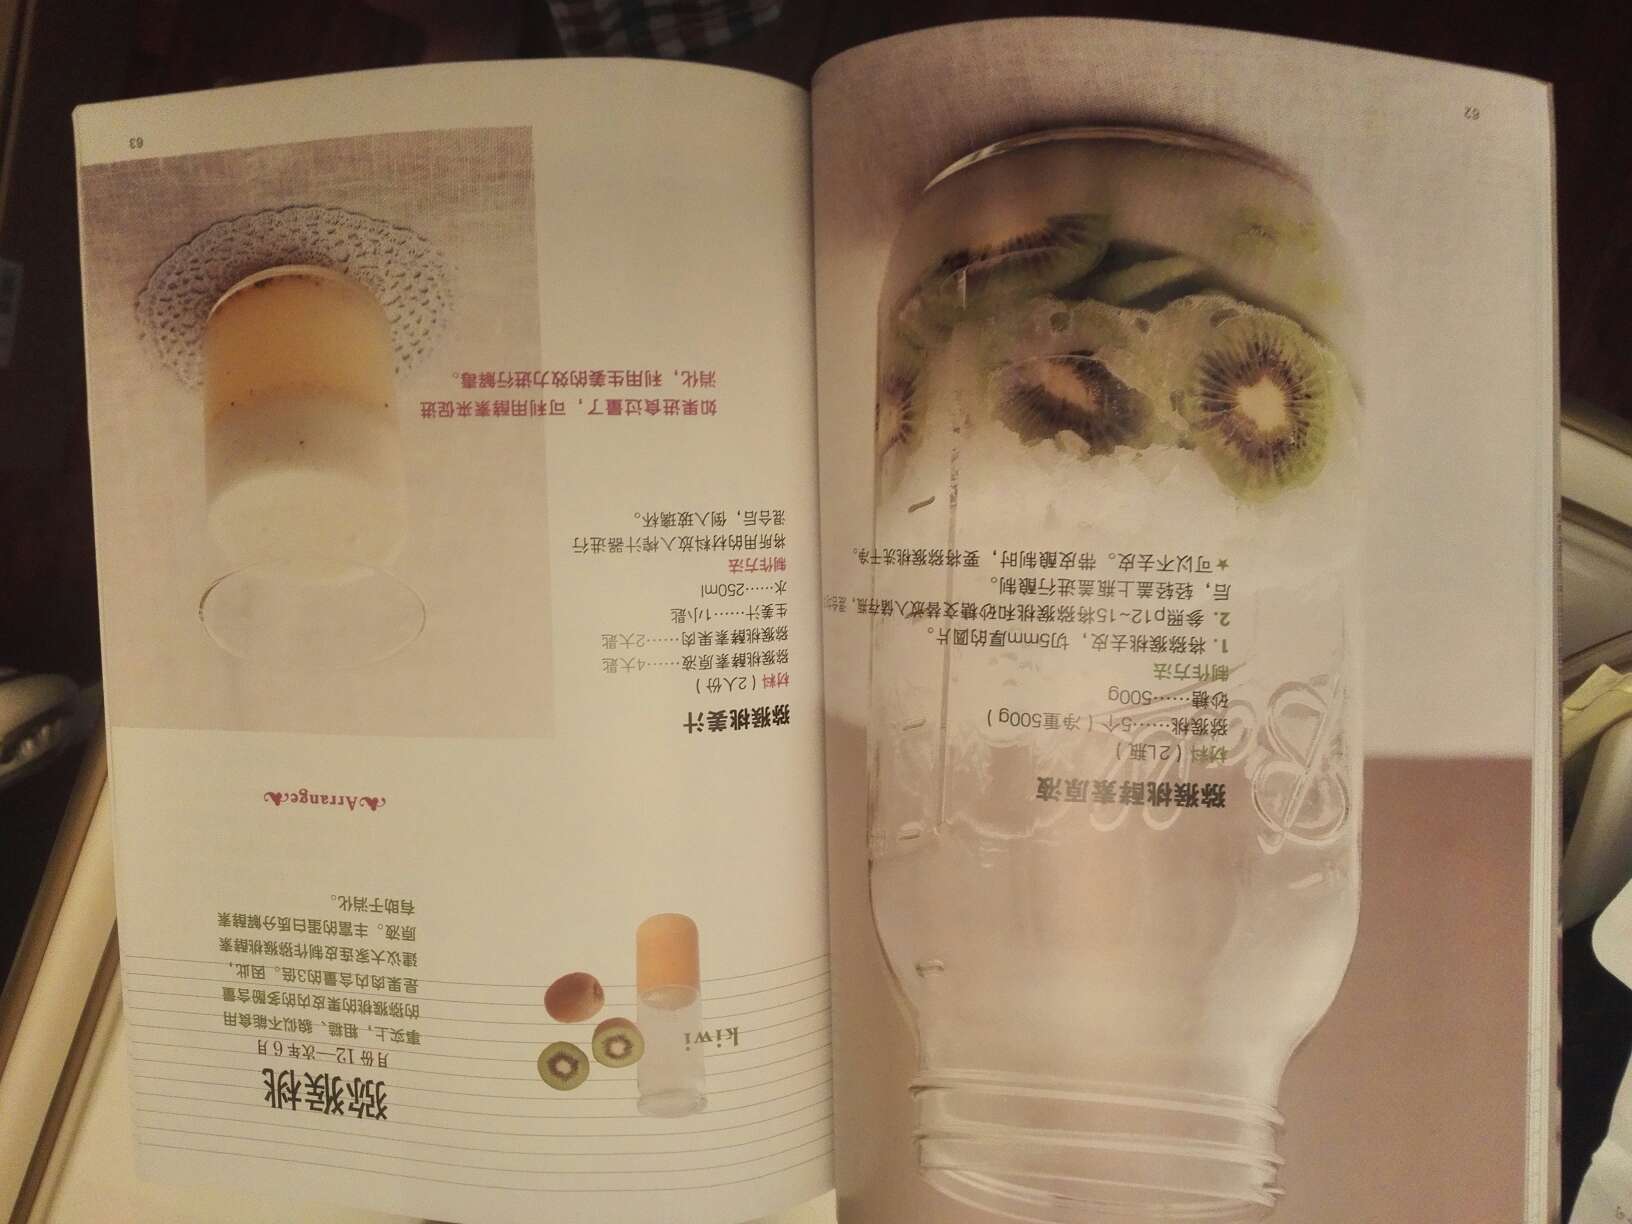 很不错的书，日本的作者，讲述如何制作蔬果酵素，十分好用，介绍了47款经典蔬果酵素制作，给老婆大人的礼物啊，很好的，彩页纸，质量很好，装帧纸张都很精美